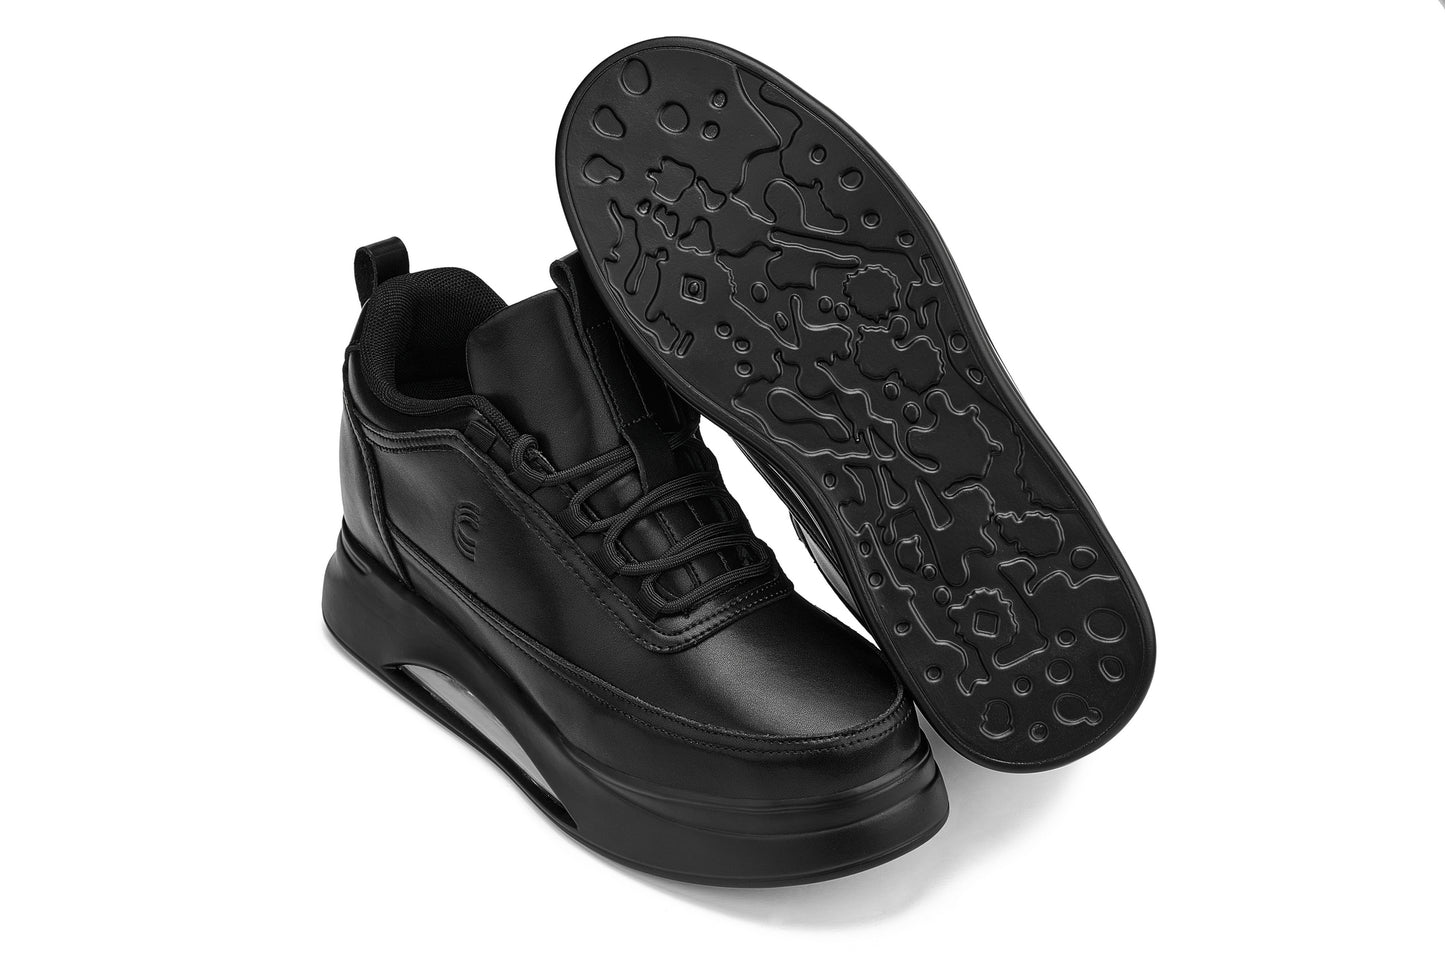 CALTO - S4925 - 3.2 pulgadas más alto (negro) - Zapatillas deportivas